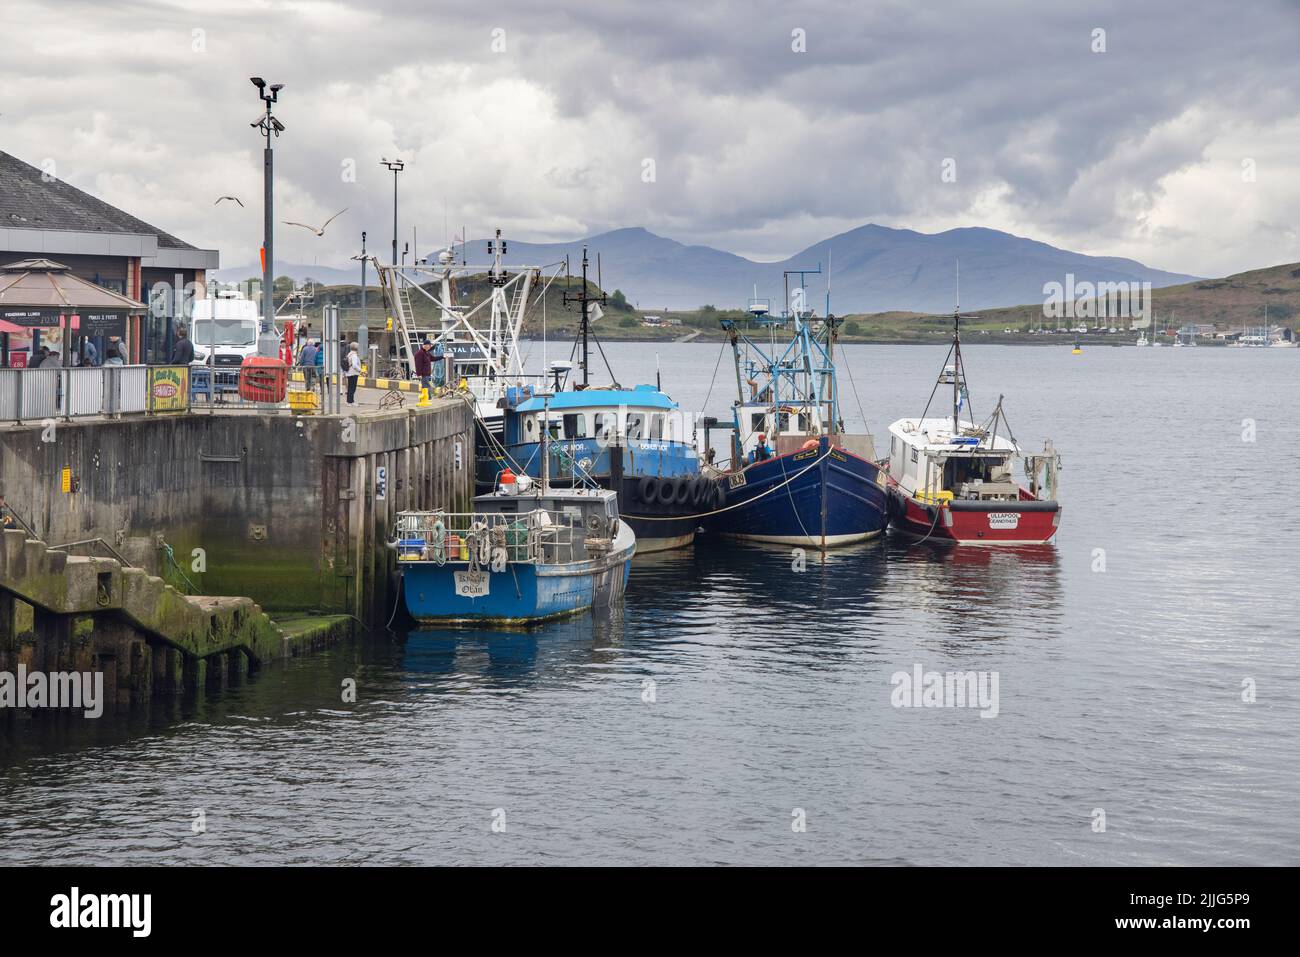 oban tiene un puerto protegido en el fiordo de lorn en la costa oeste de escocia Foto de stock